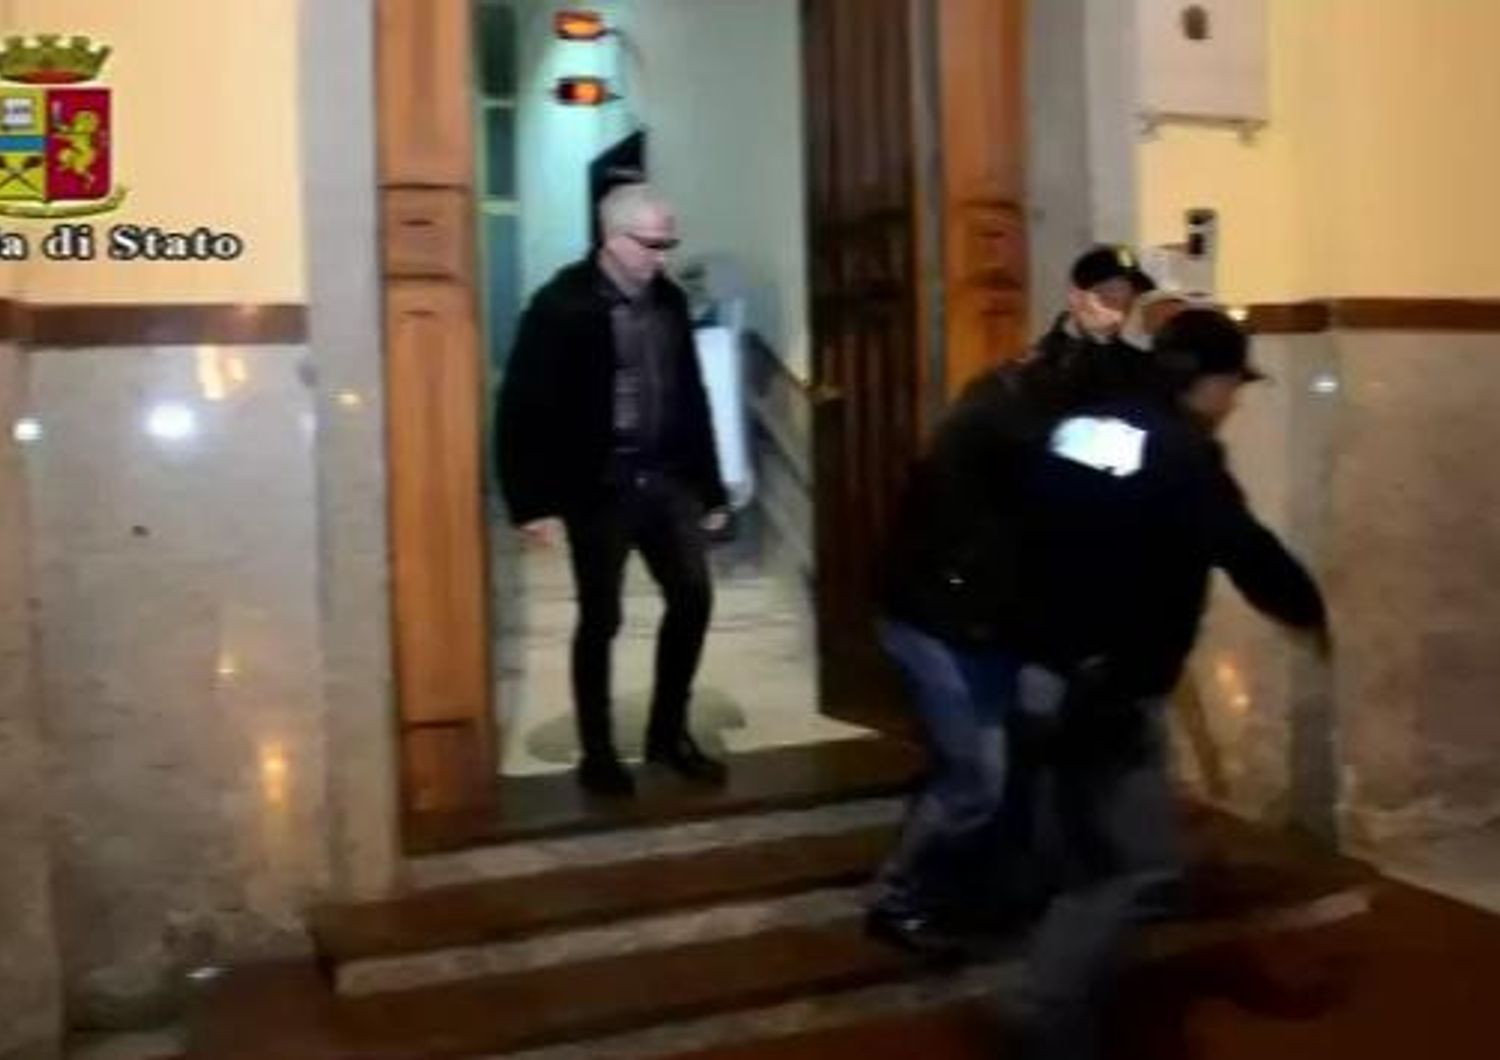 &nbsp;Salerno arresto algerino complice terroristi stragi Parigi e Bruxelles